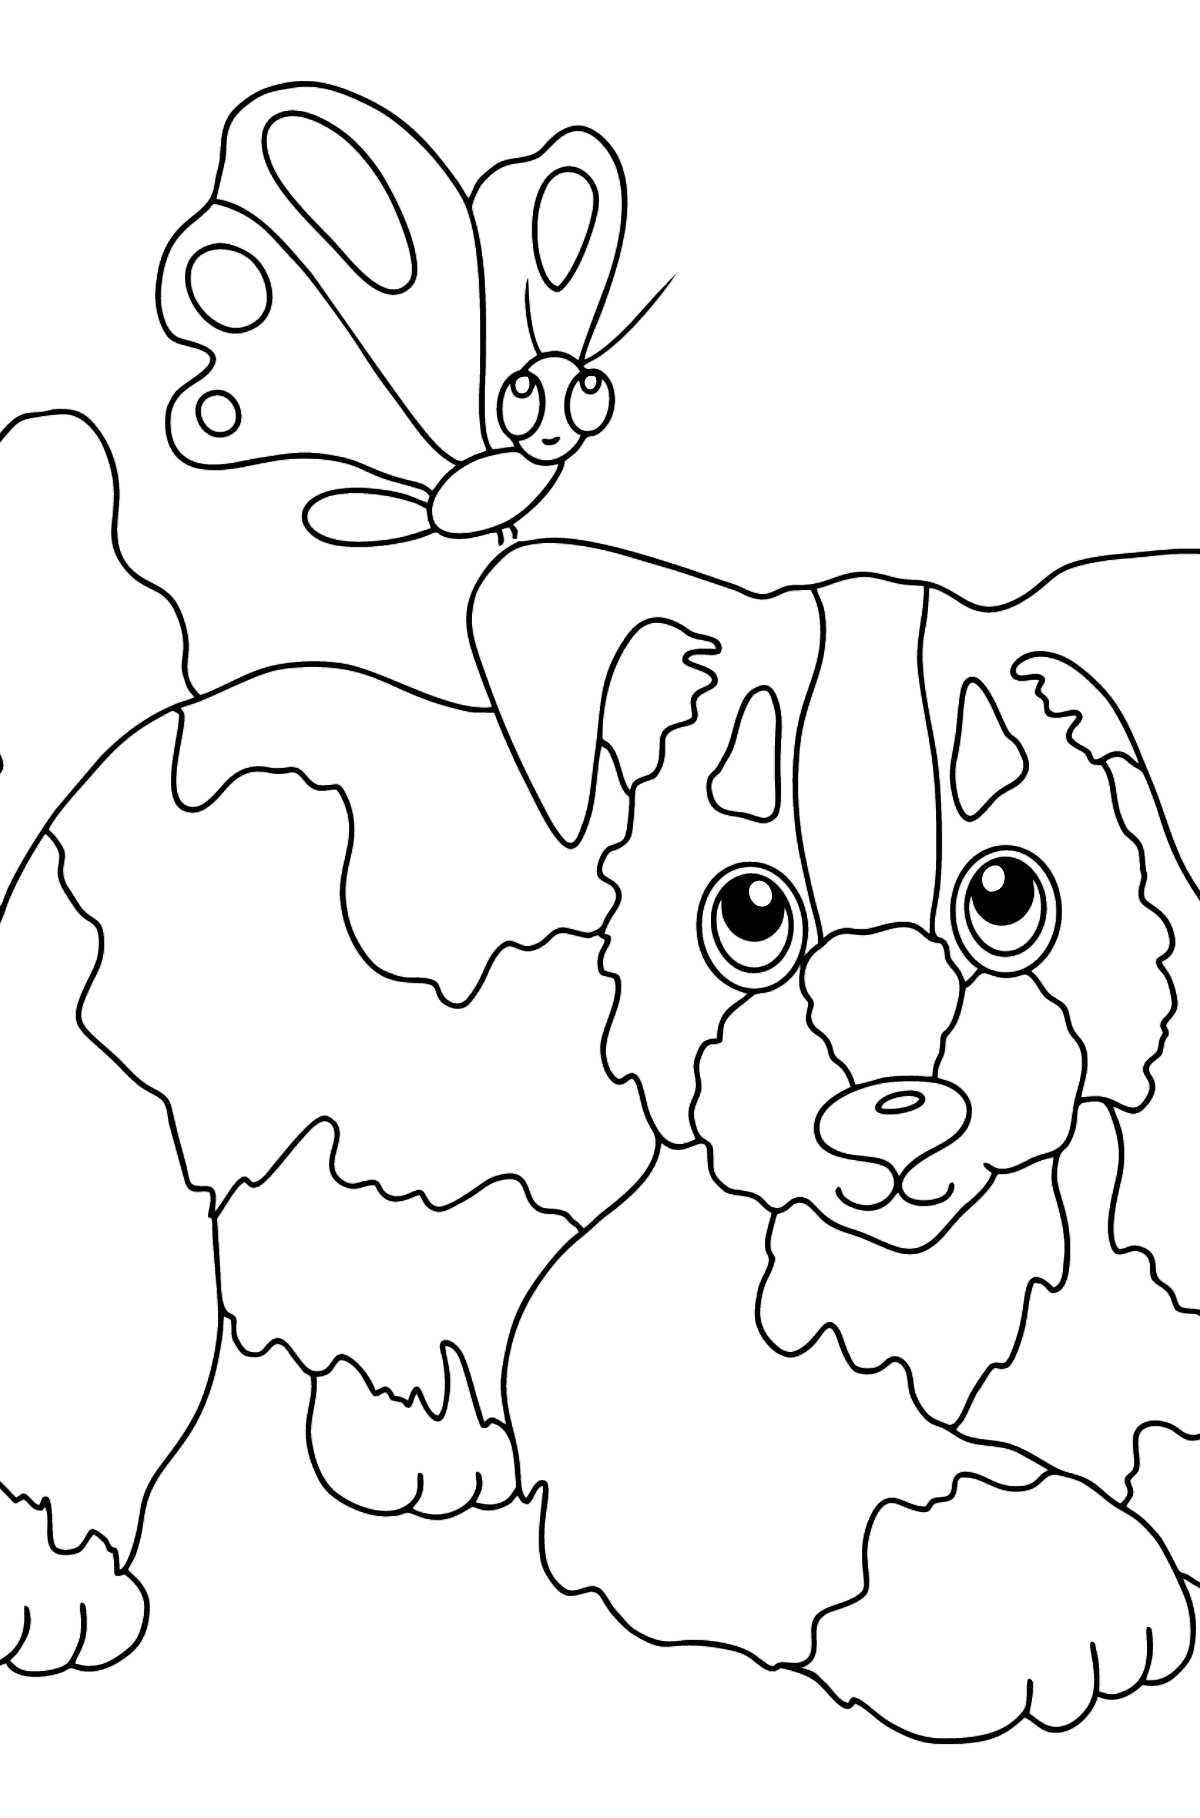 Kleurplaat hond en vlinder (makkelijk) - kleurplaten voor kinderen